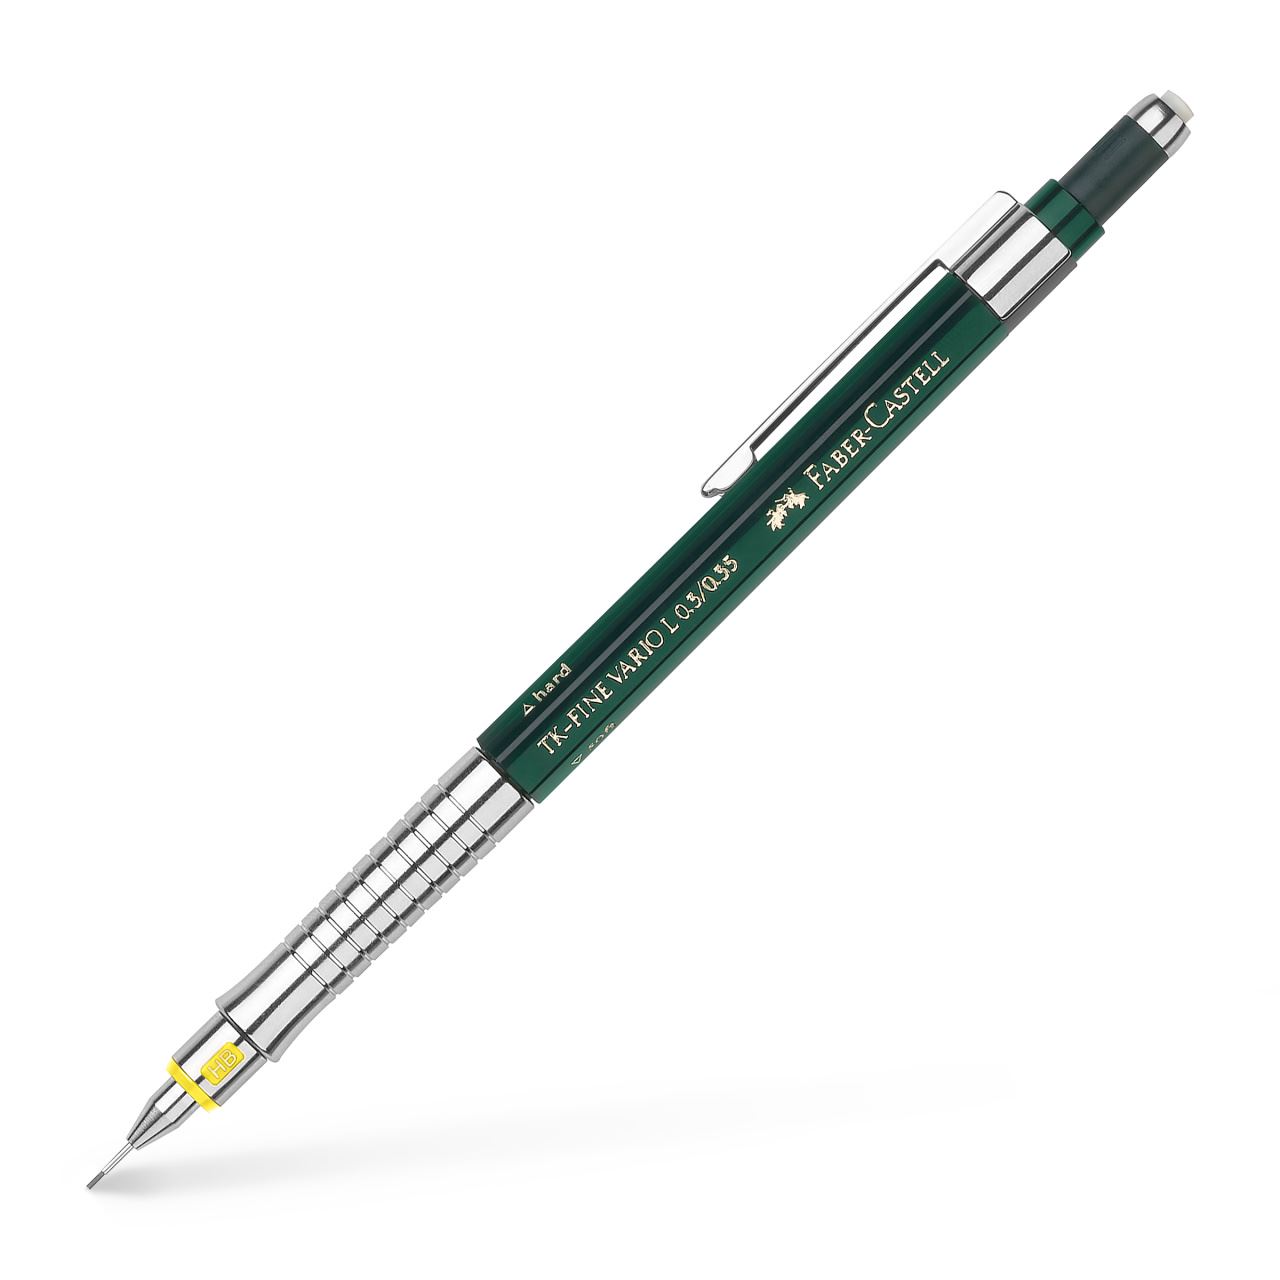 Faber-Castell - Mechanická tužka TK-Fine Vario L 0.35 mm